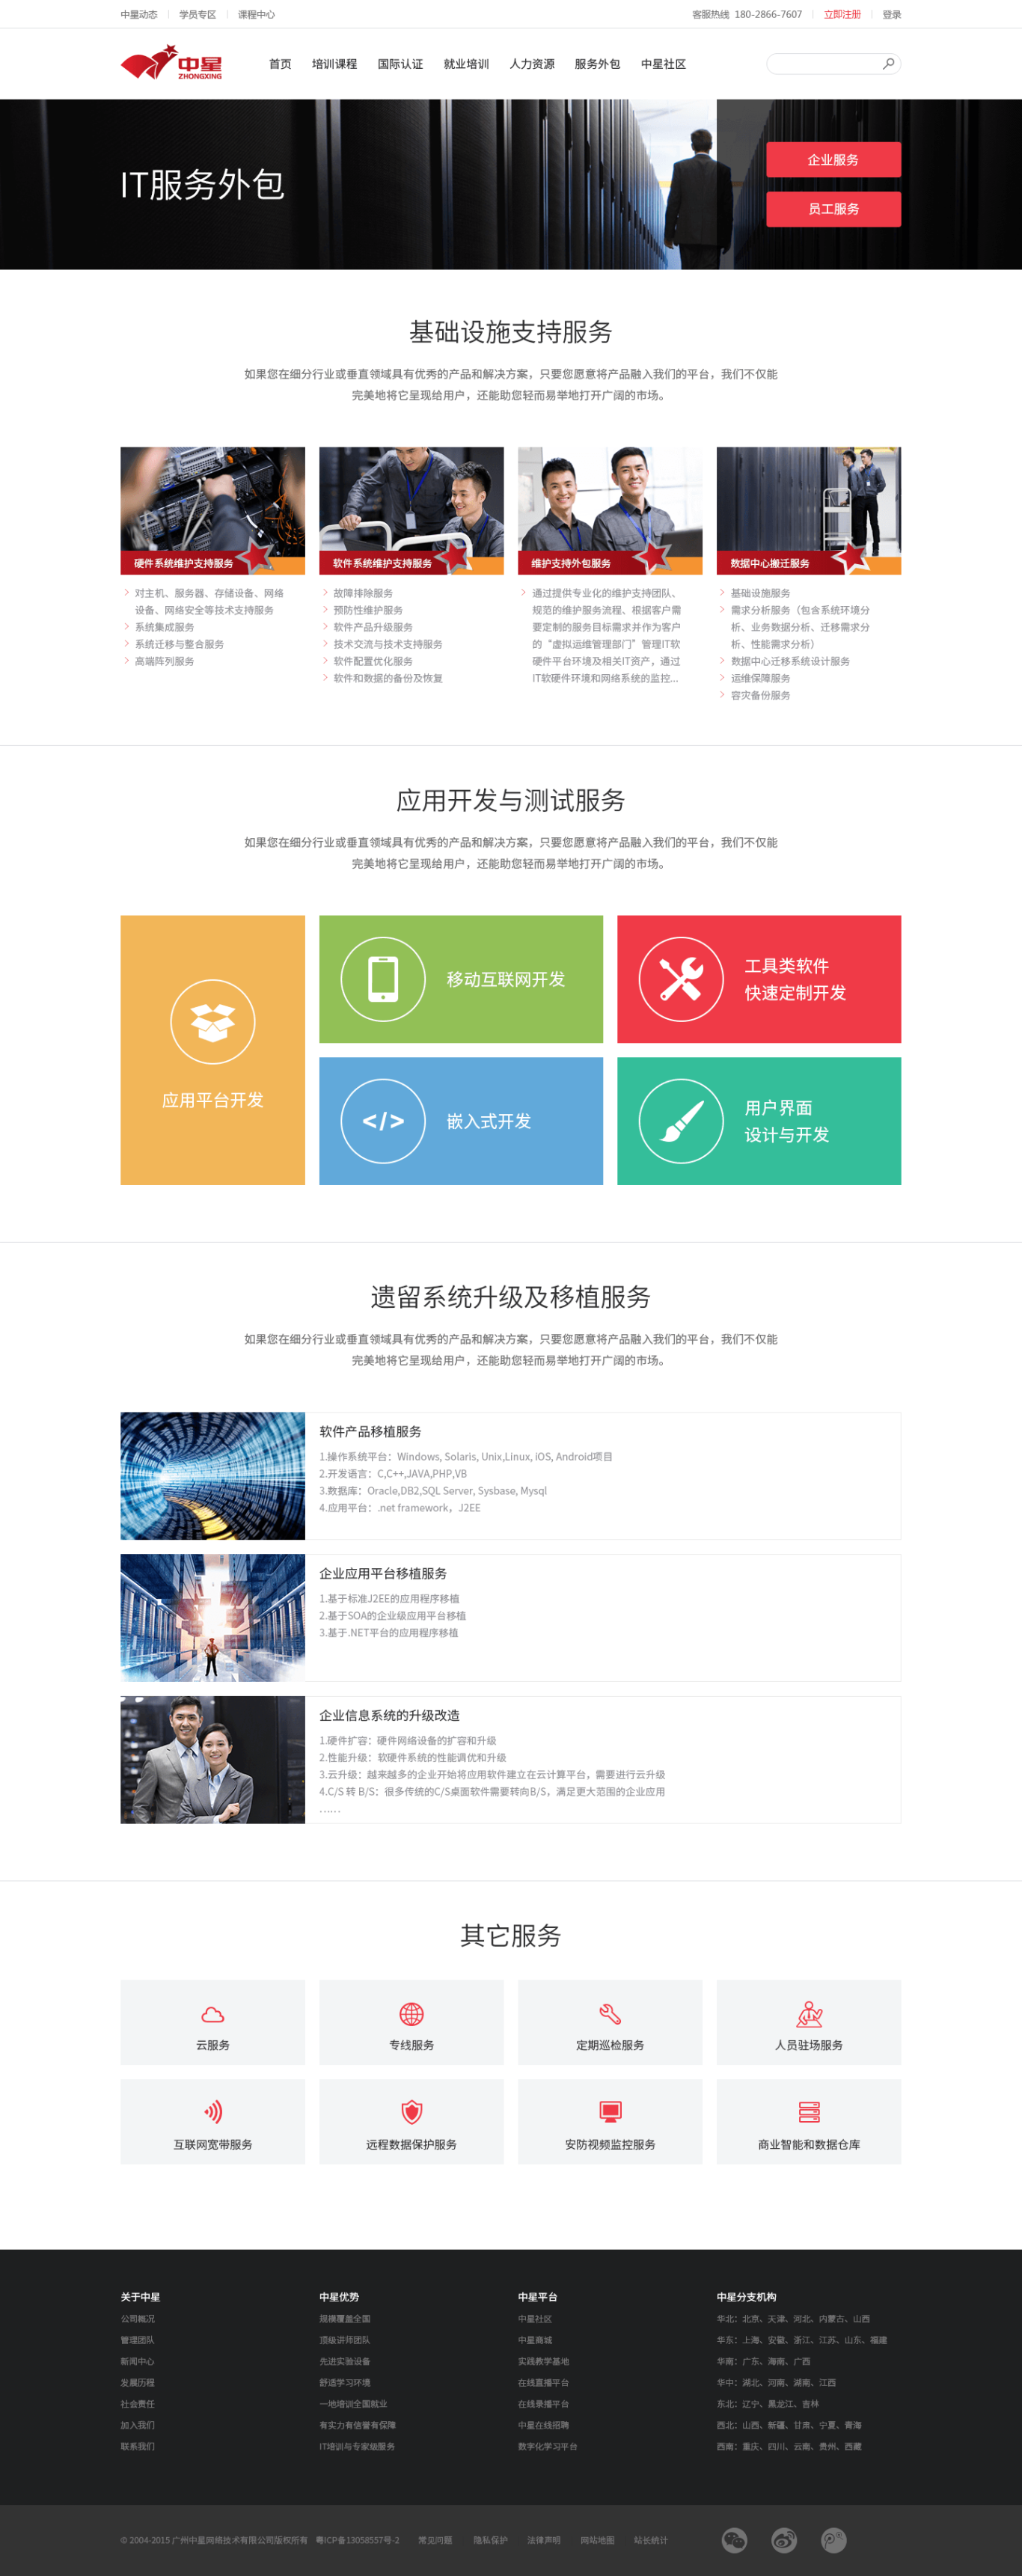 中星集团网站界面设计图4